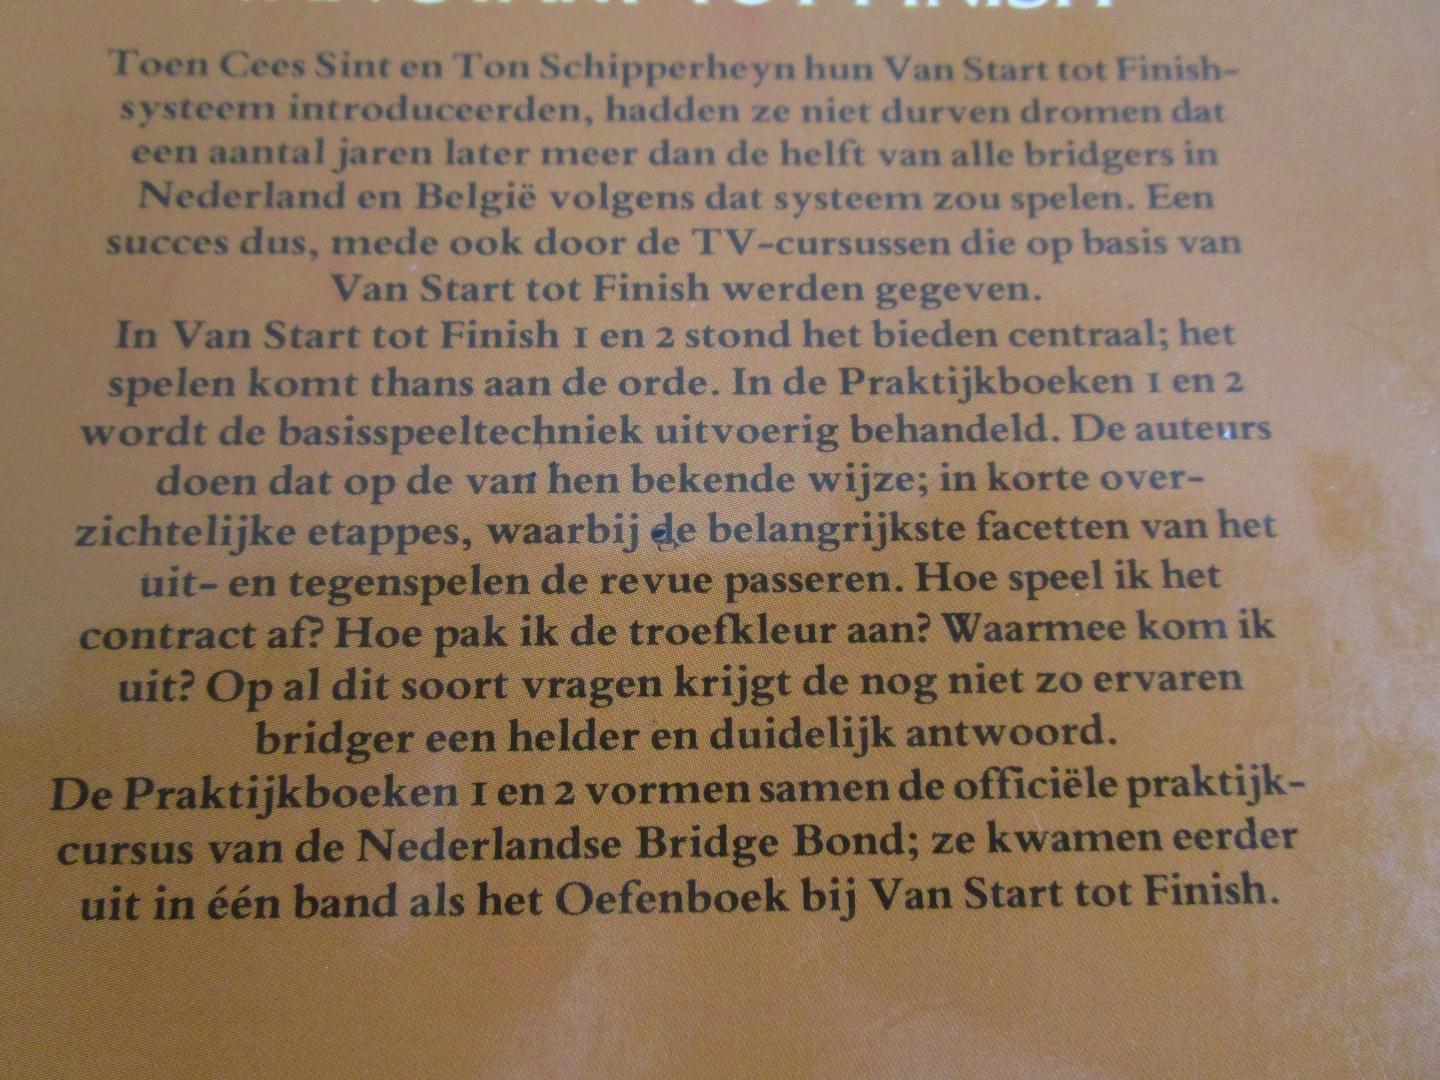 Sint, Cees en Schipperheyn, Ton - BRIDGE VAN START TOT FINISH; deel 1 t/m 6 en Bied- en Speelvragen bij nr 1 en 2 ;  7 DELEN KOMPLEET